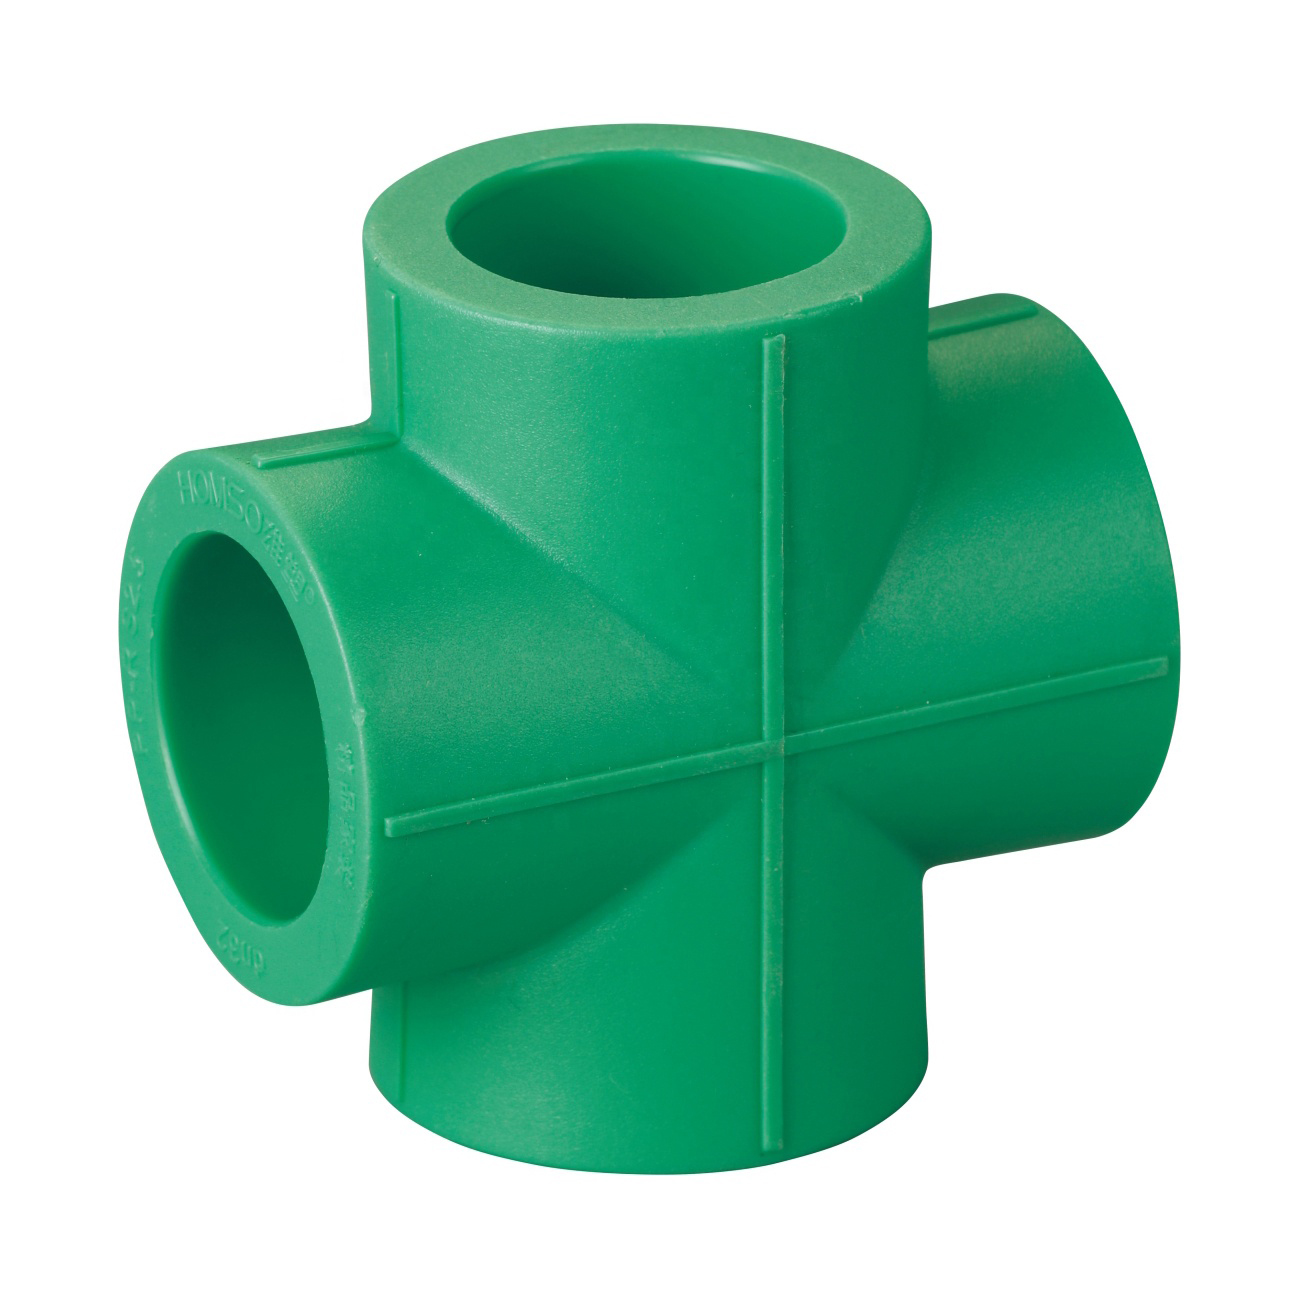 20-mm-plastic-pipe-ppr-water-pipe-fittings-4-way-cross-tee